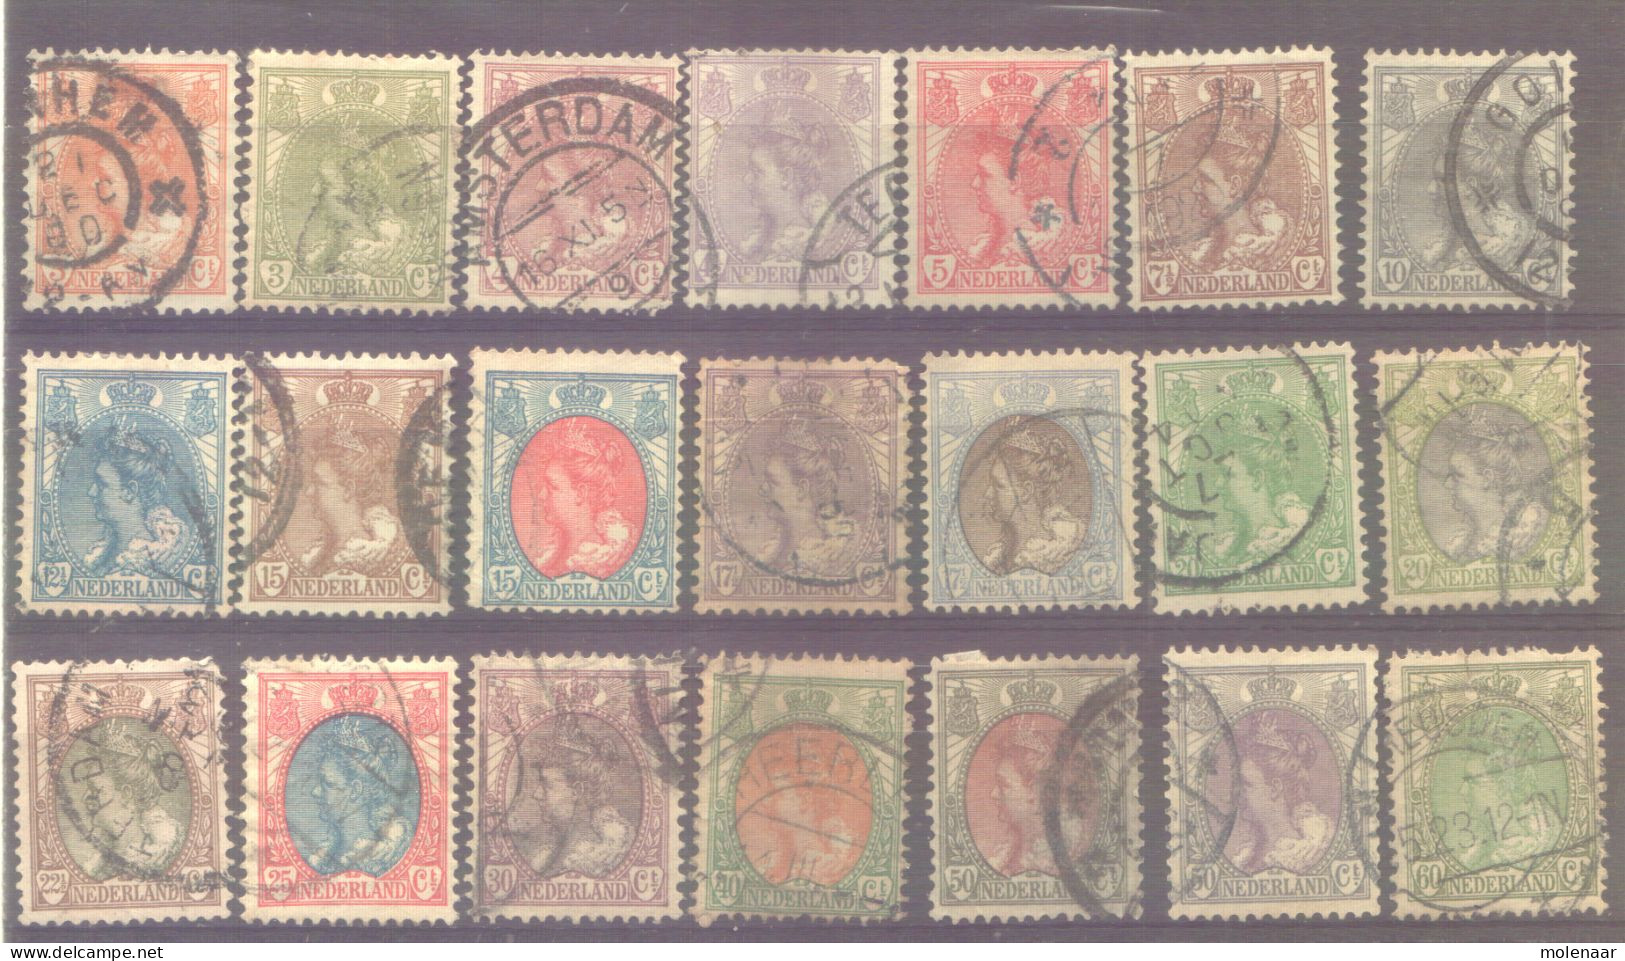 Postzegels > Europa > Nederland > Periode 1891-1948 (Wilhelmina) > 1910-29 > Gebruikt No. 56-76 (11865) - Used Stamps